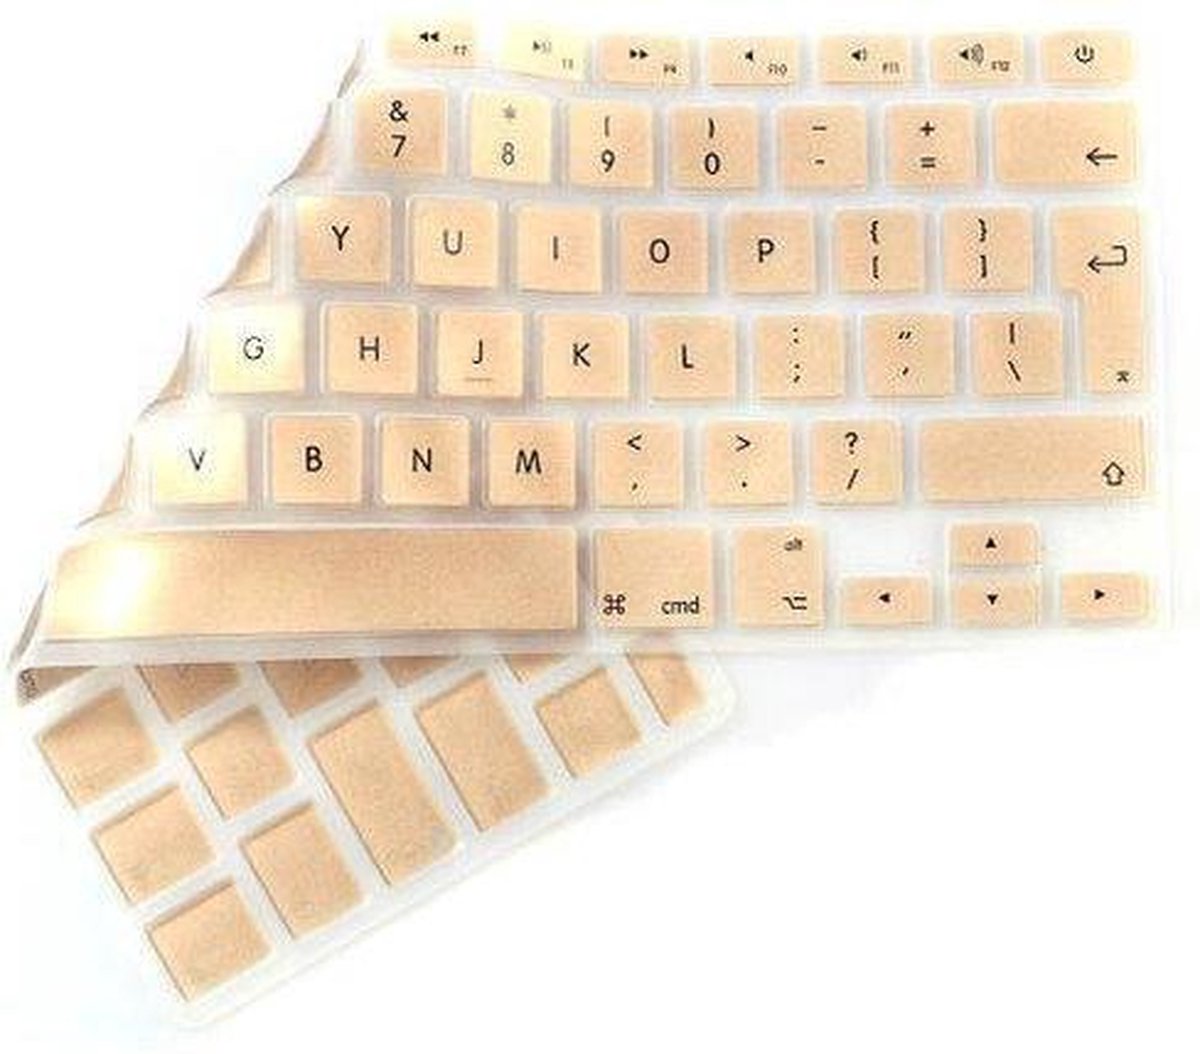 CrystalGuard Keyboard Cover Protector Toetsenbord bescherming Macbook Air